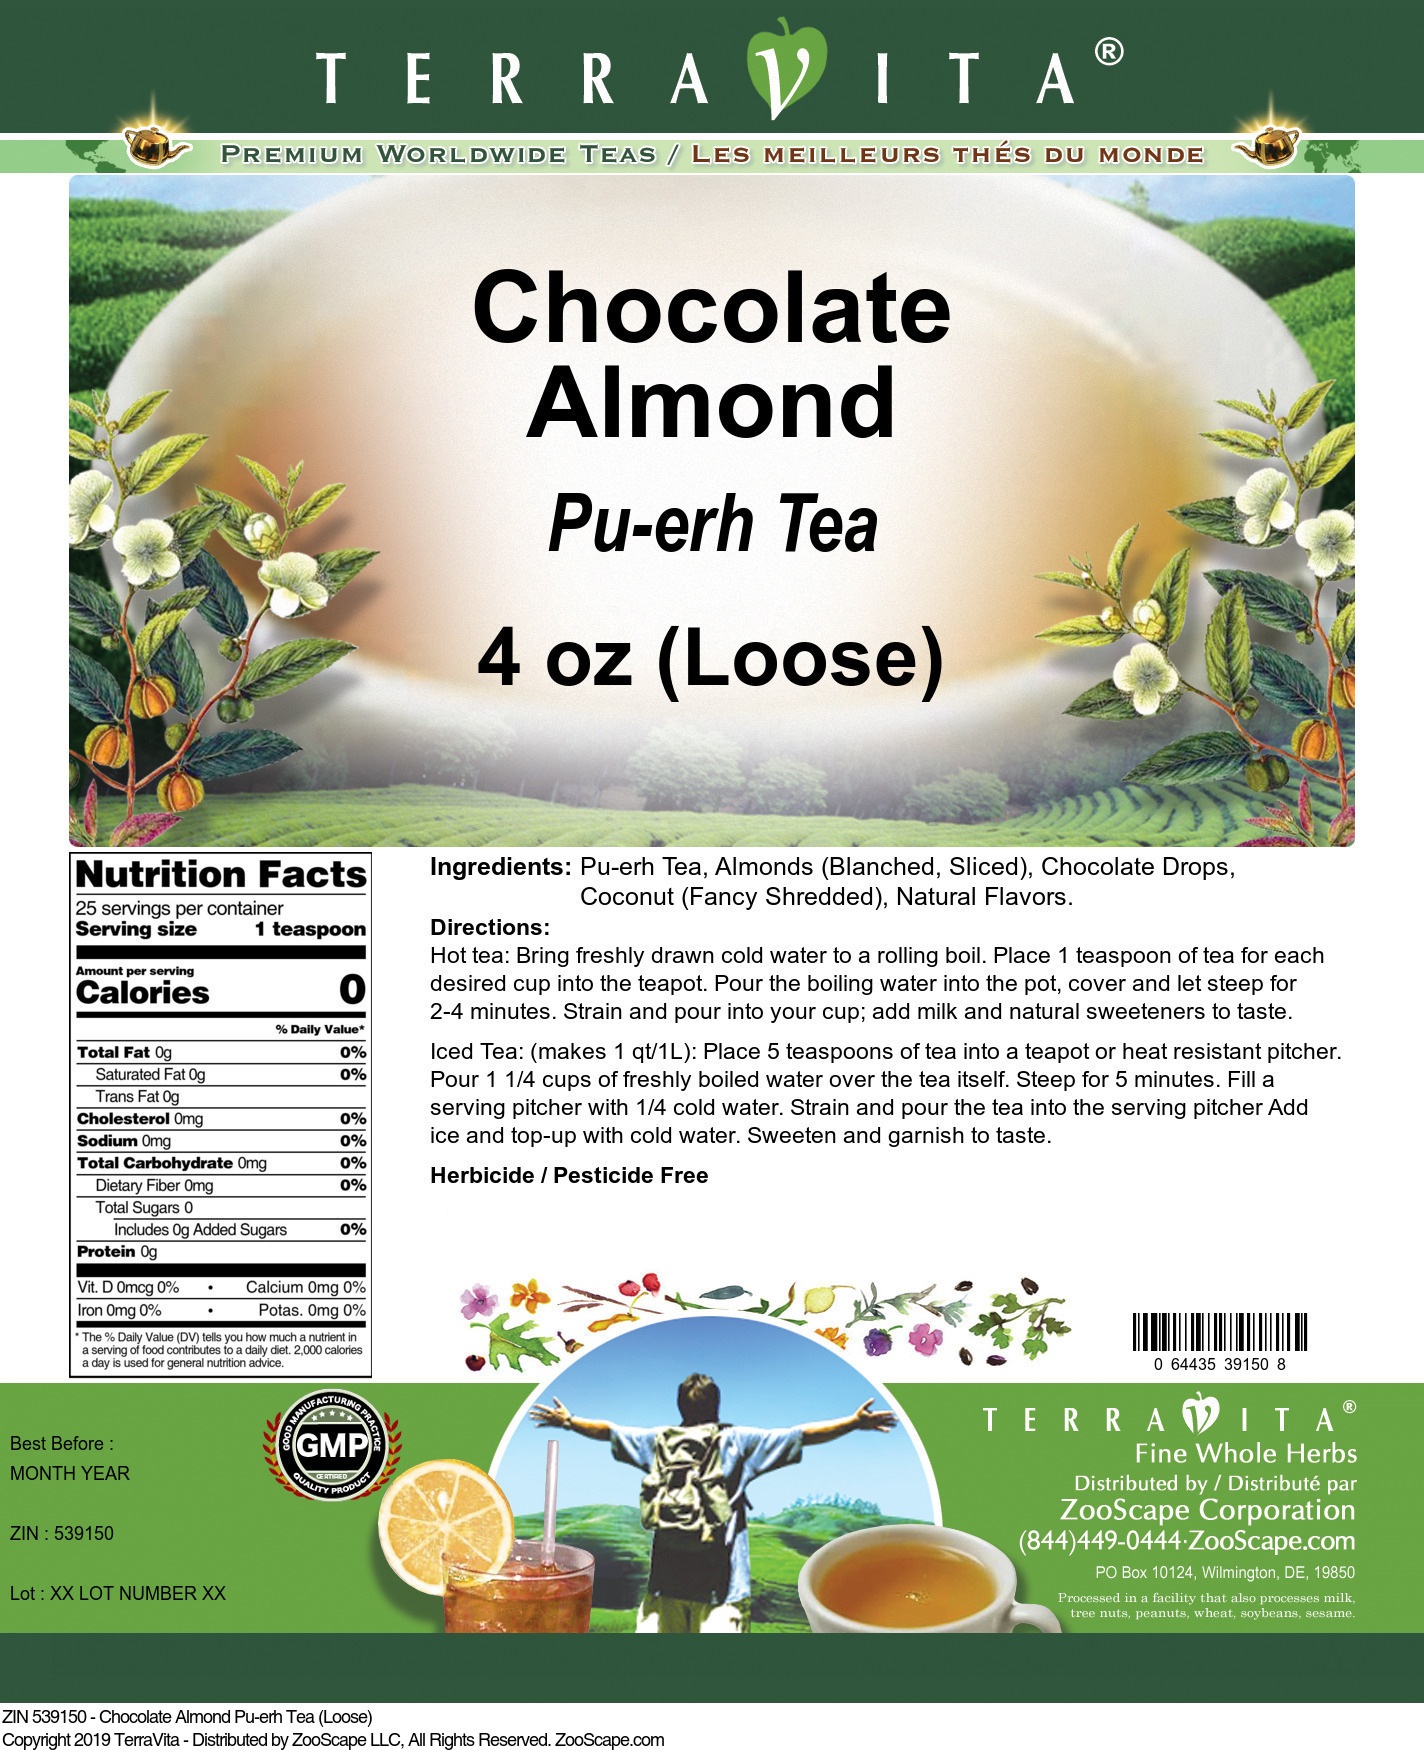 Chocolate Almond Pu-erh Tea (Loose) - Label